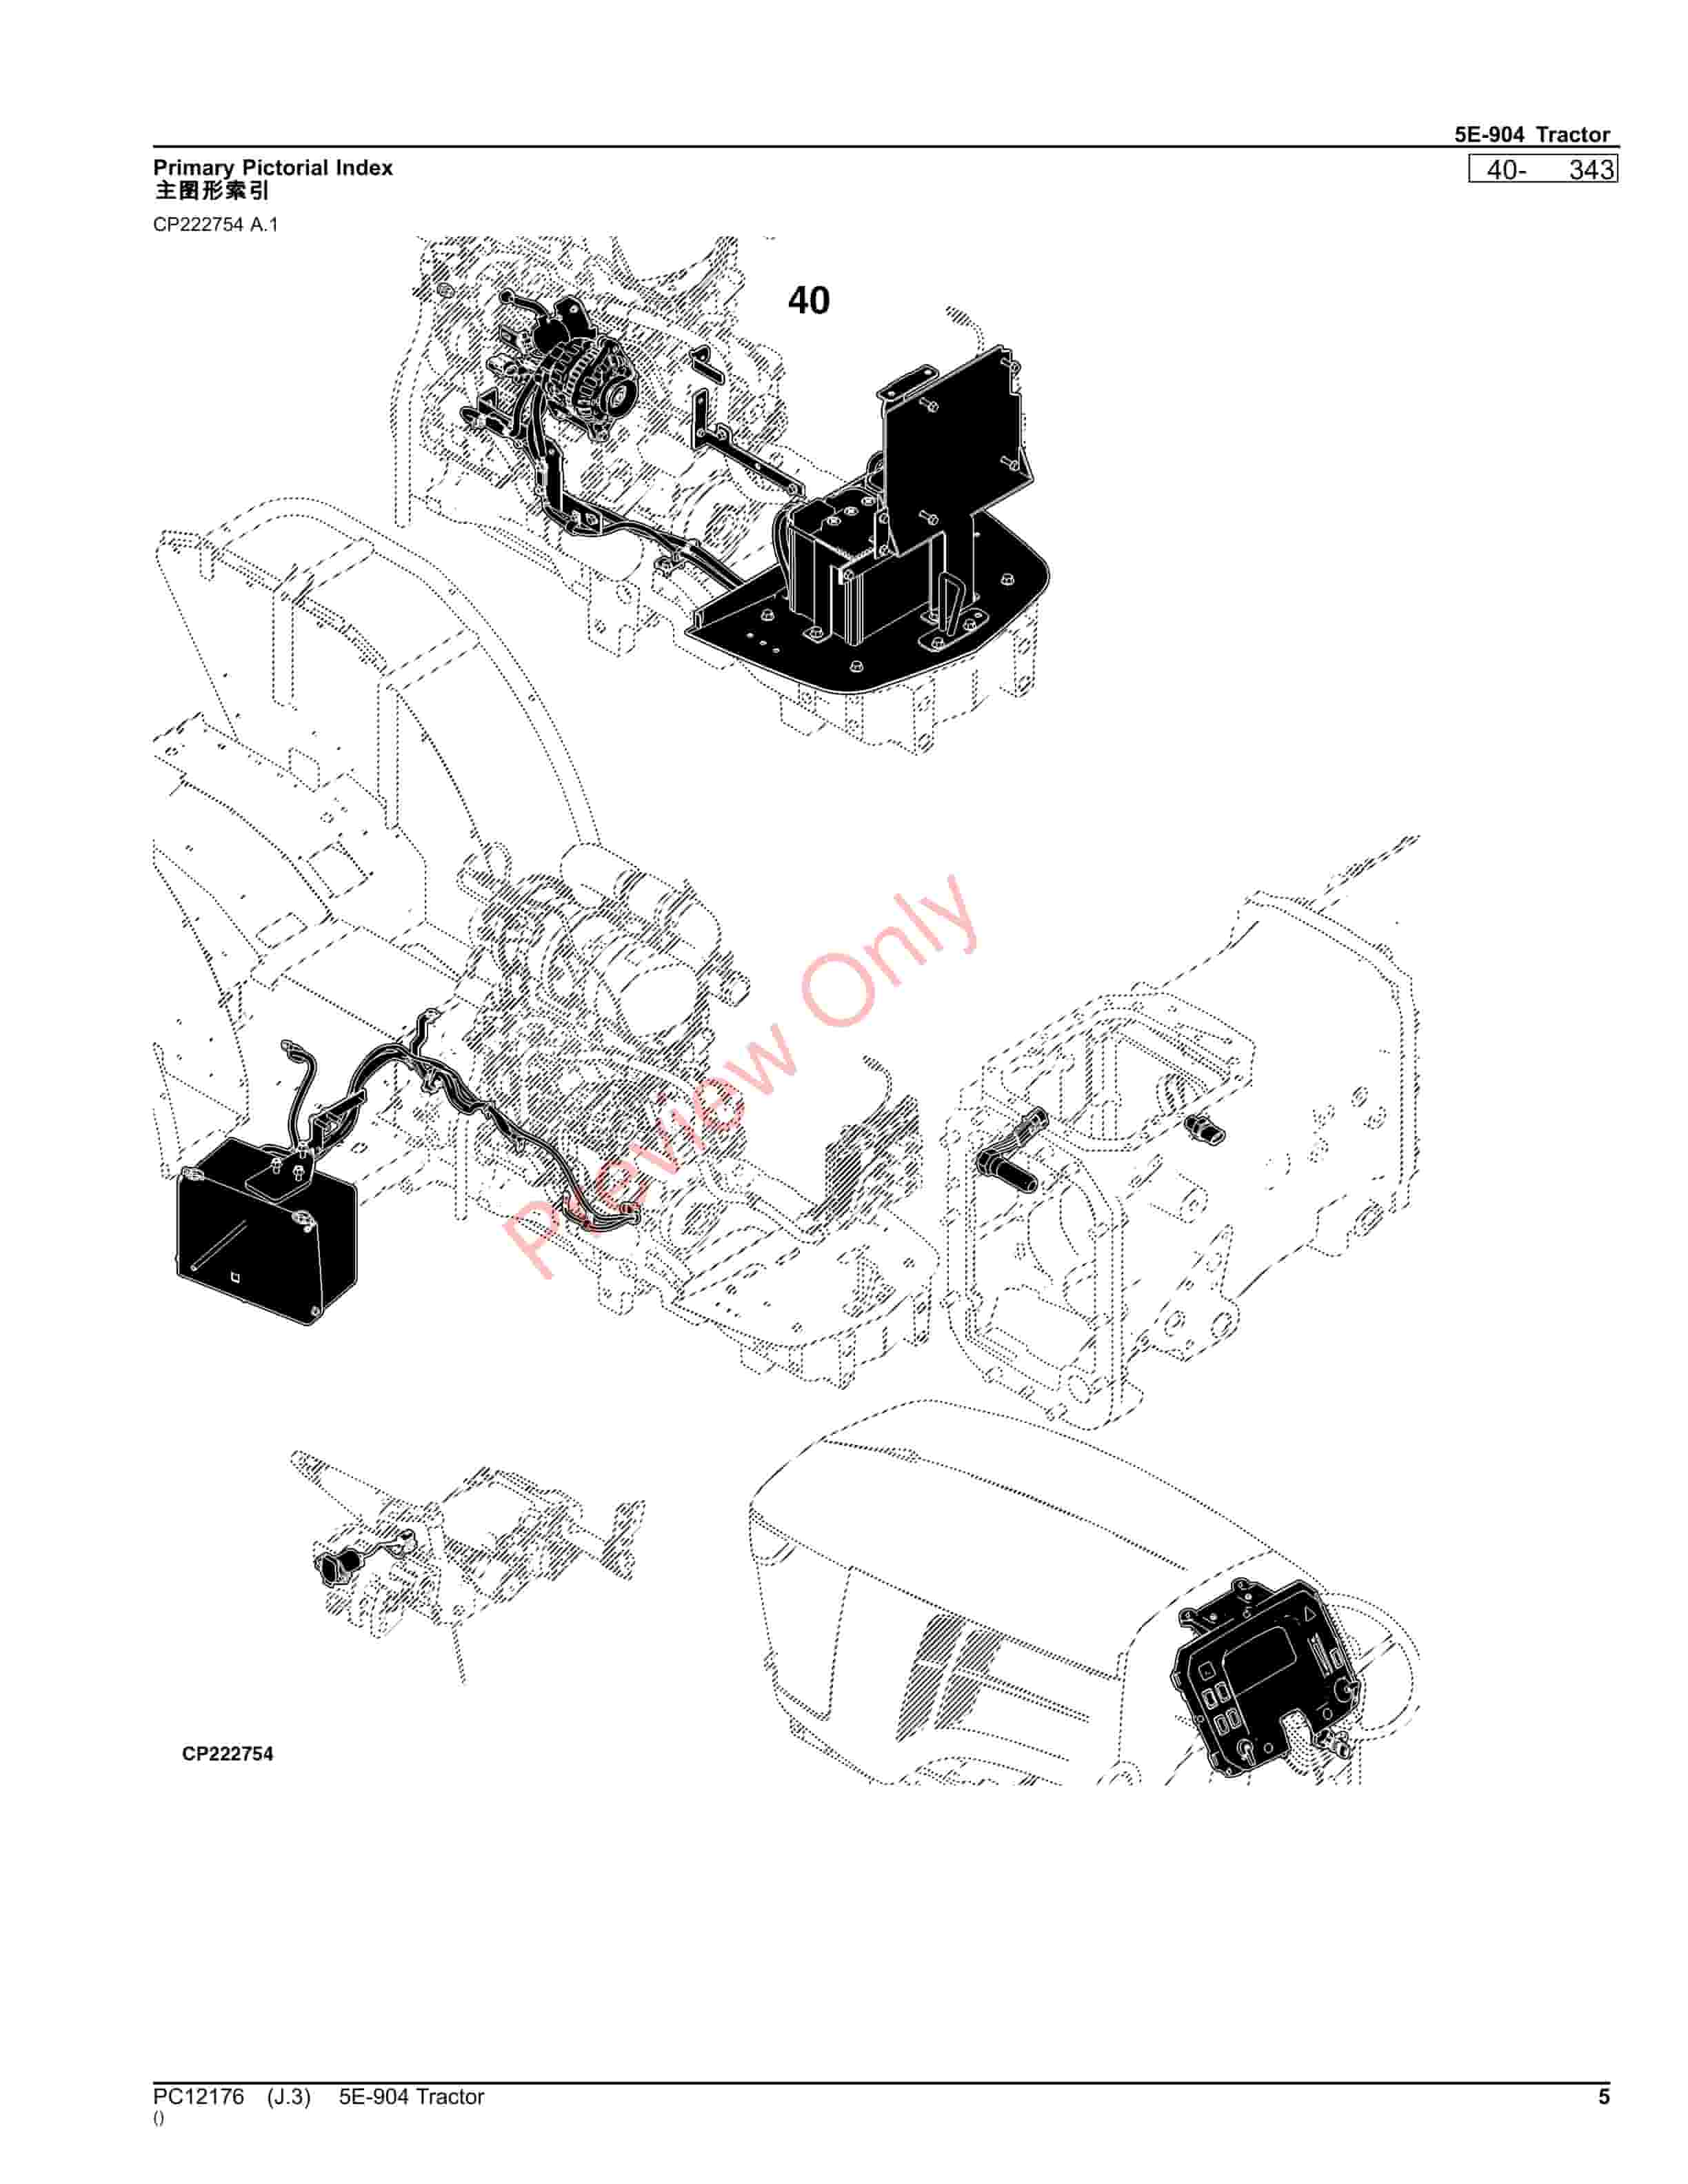 John Deere 5E-904 Tractor Parts Catalog PC12176 23NOV23-5